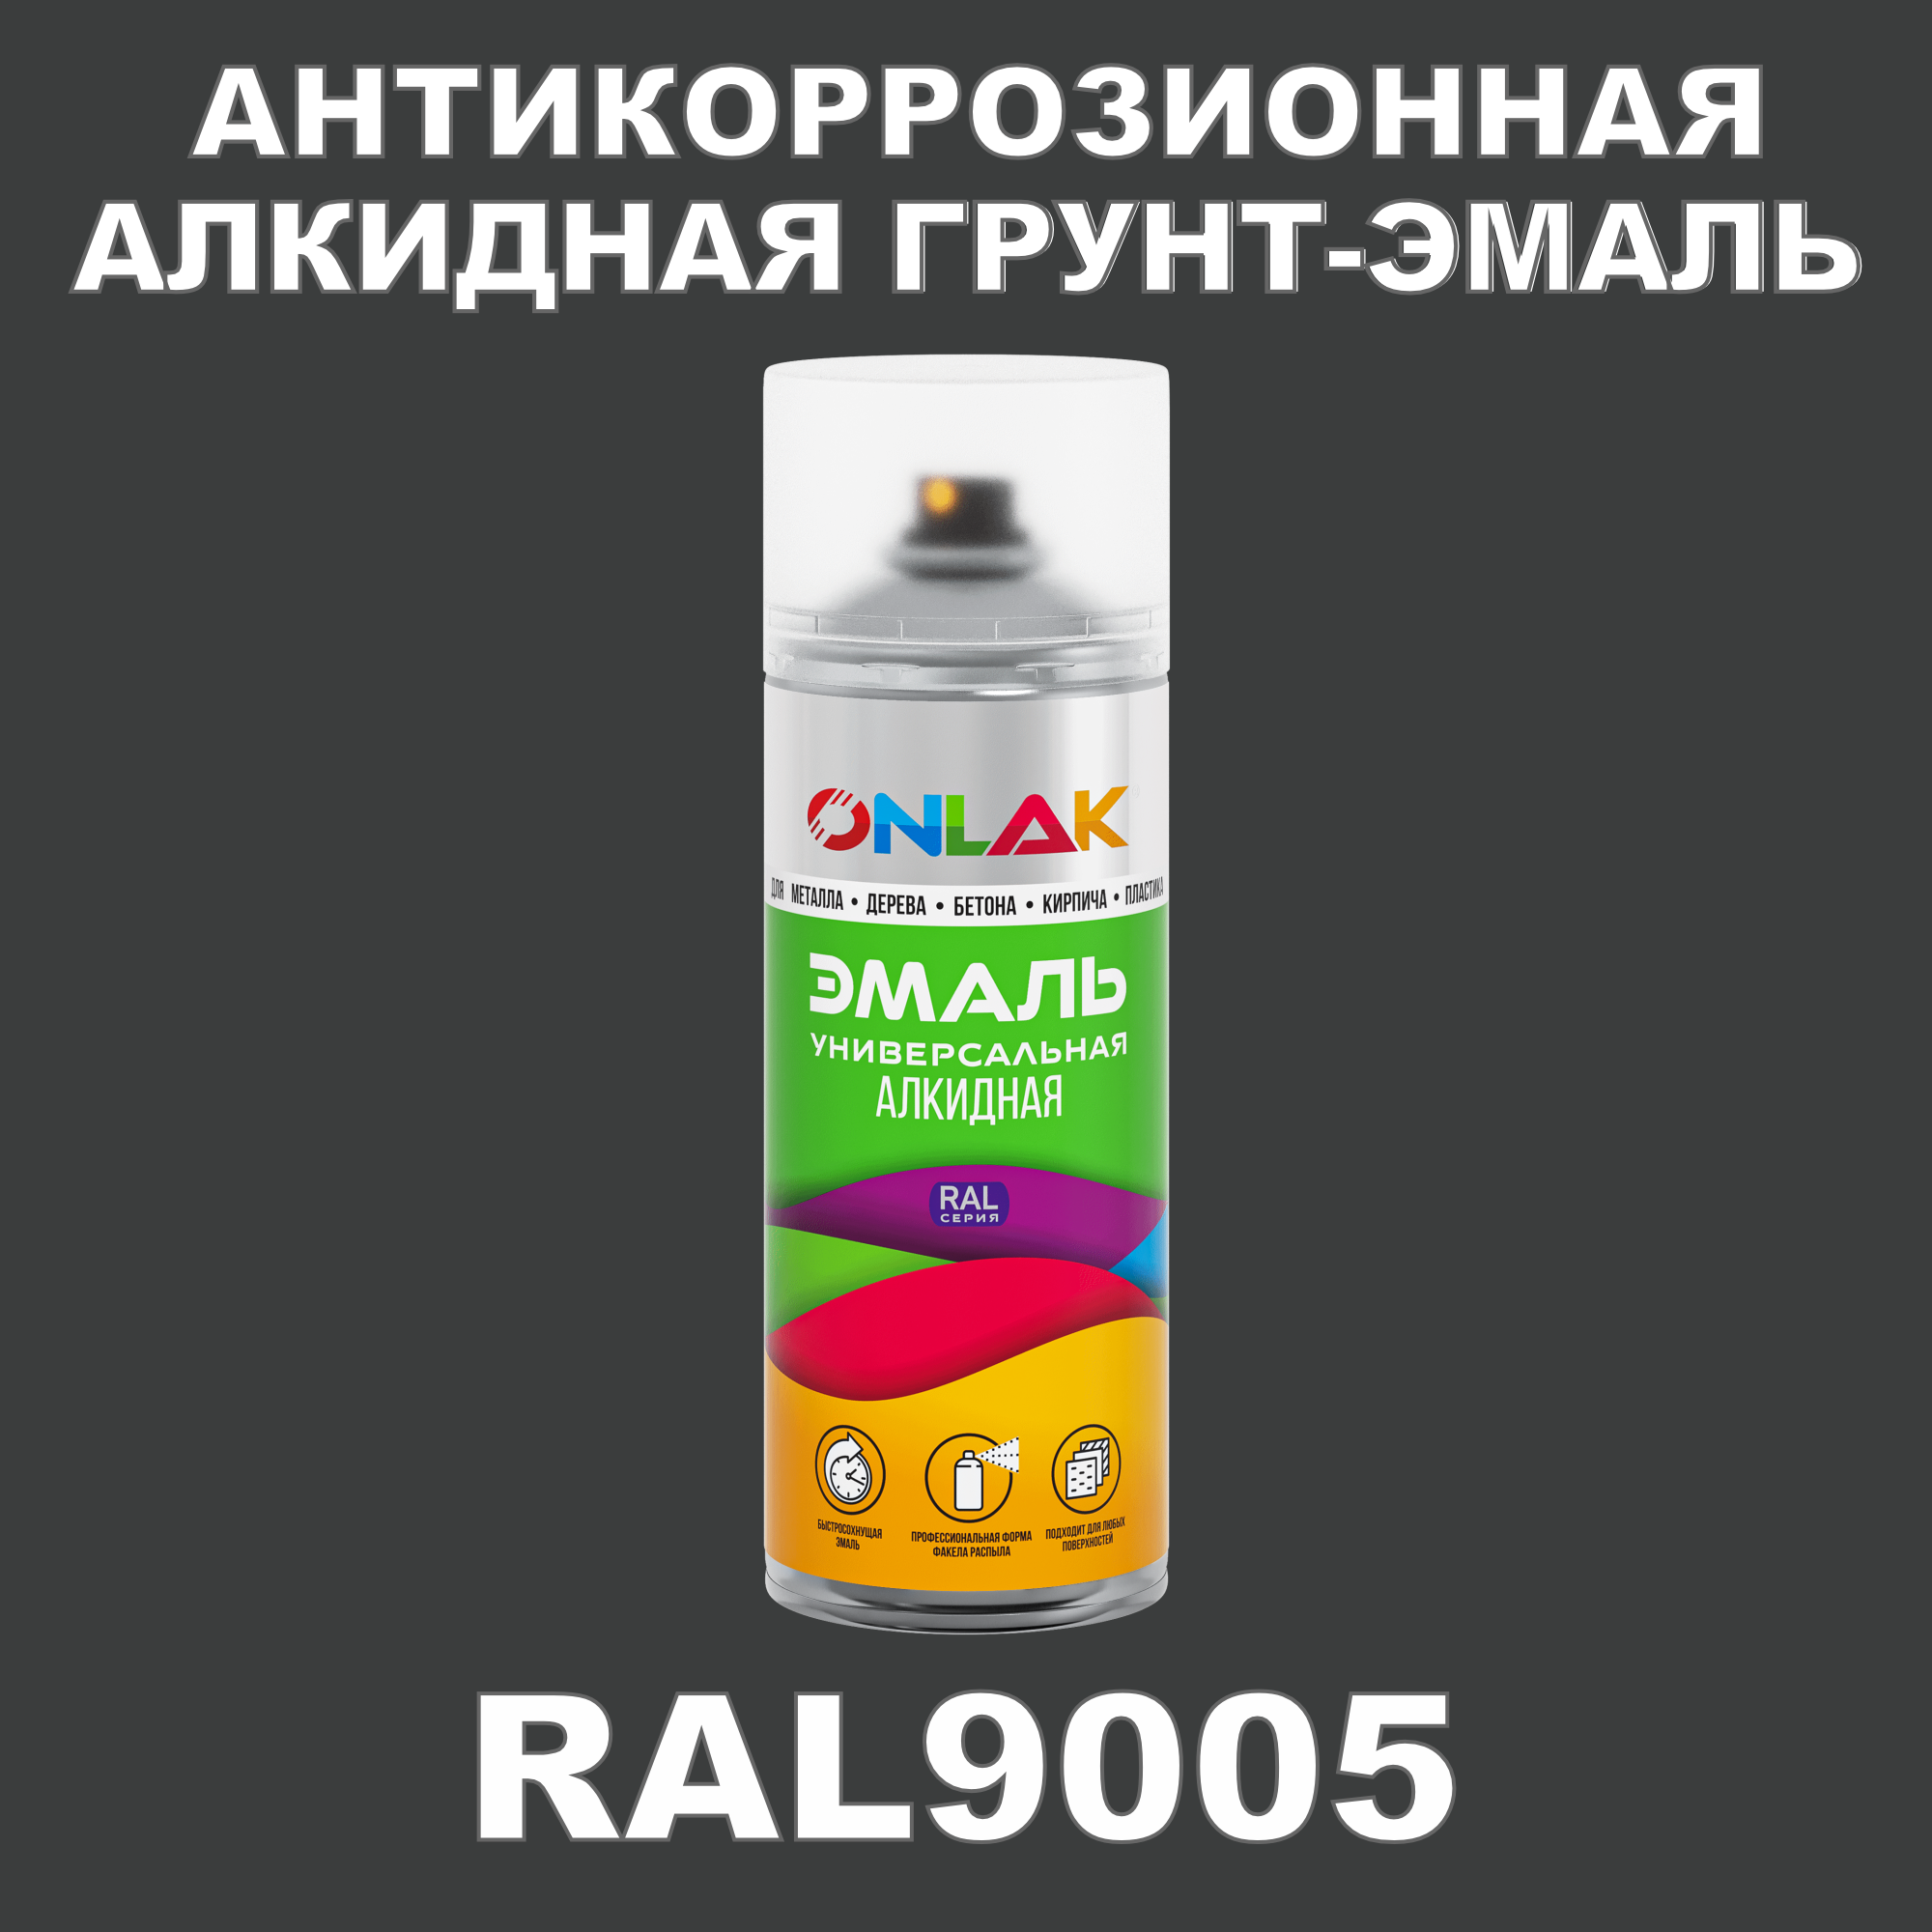 Антикоррозионная грунт-эмаль ONLAK RAL9005 полуматовая для металла и защиты от ржавчины